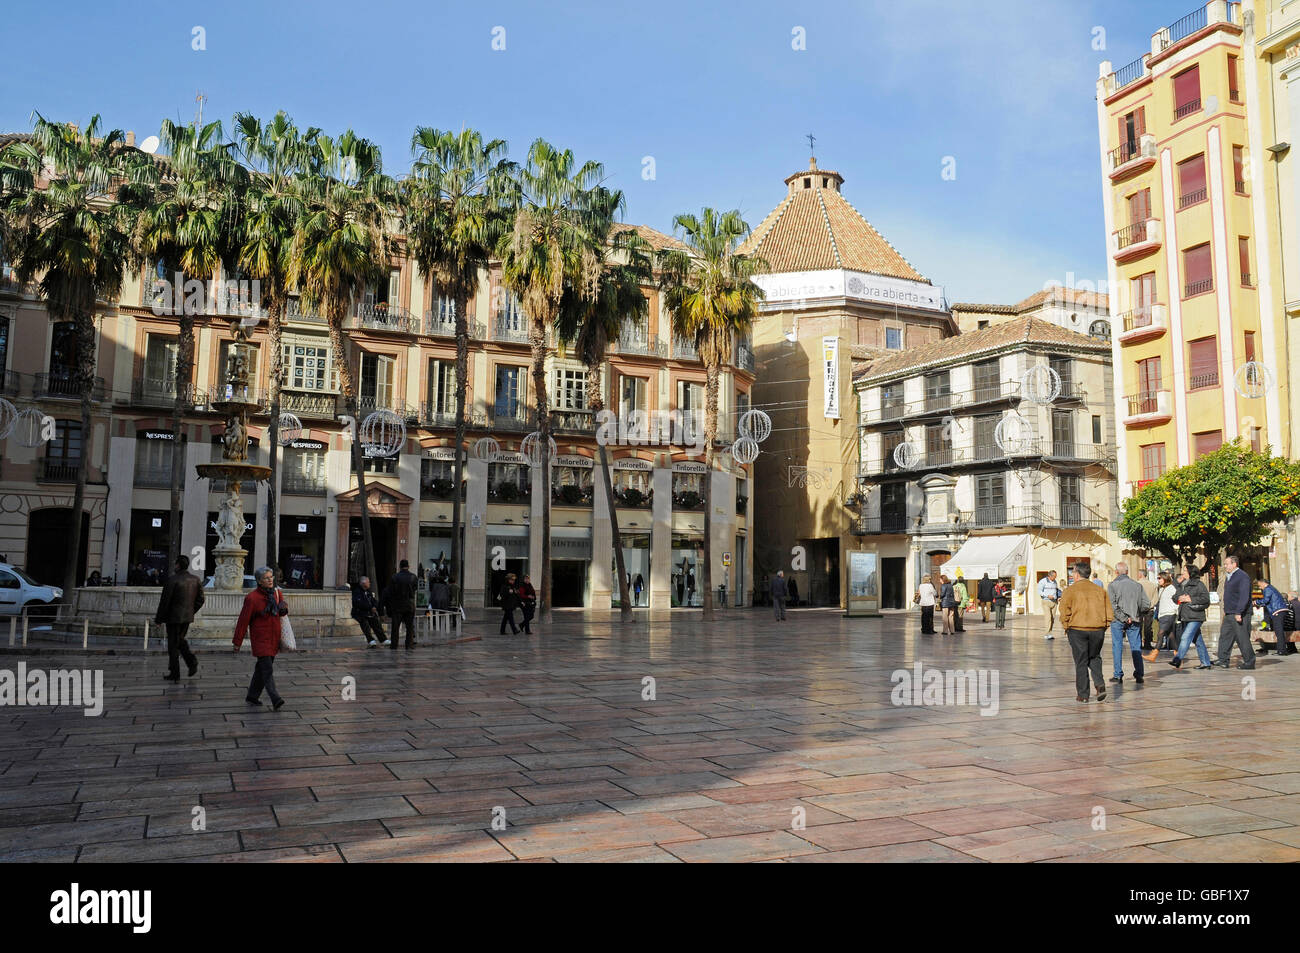 Plaza de la Constitucion, square, Malaga, Costa del Sol, Province of ...